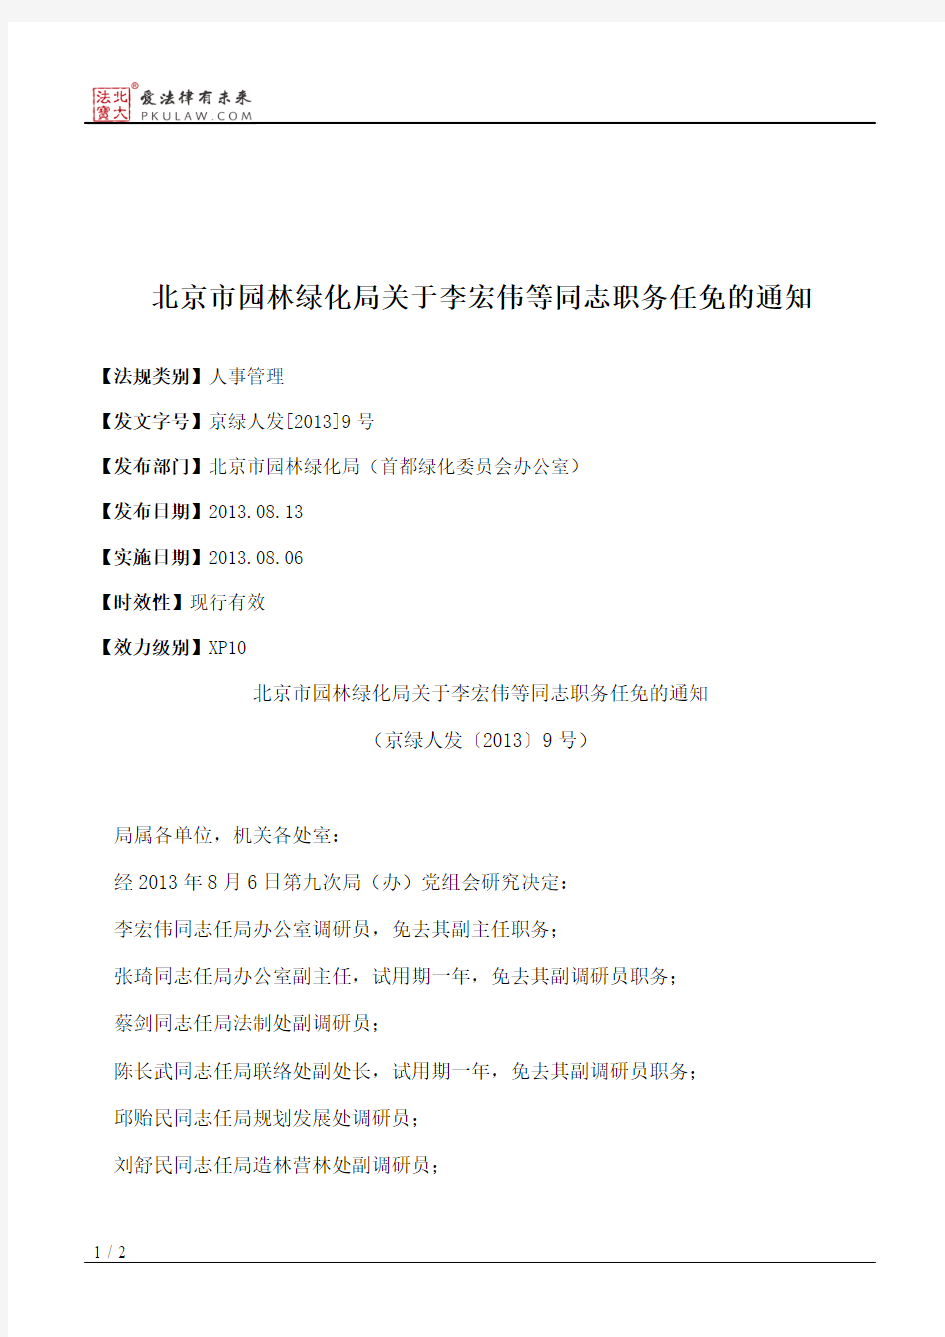 北京市园林绿化局关于李宏伟等同志职务任免的通知